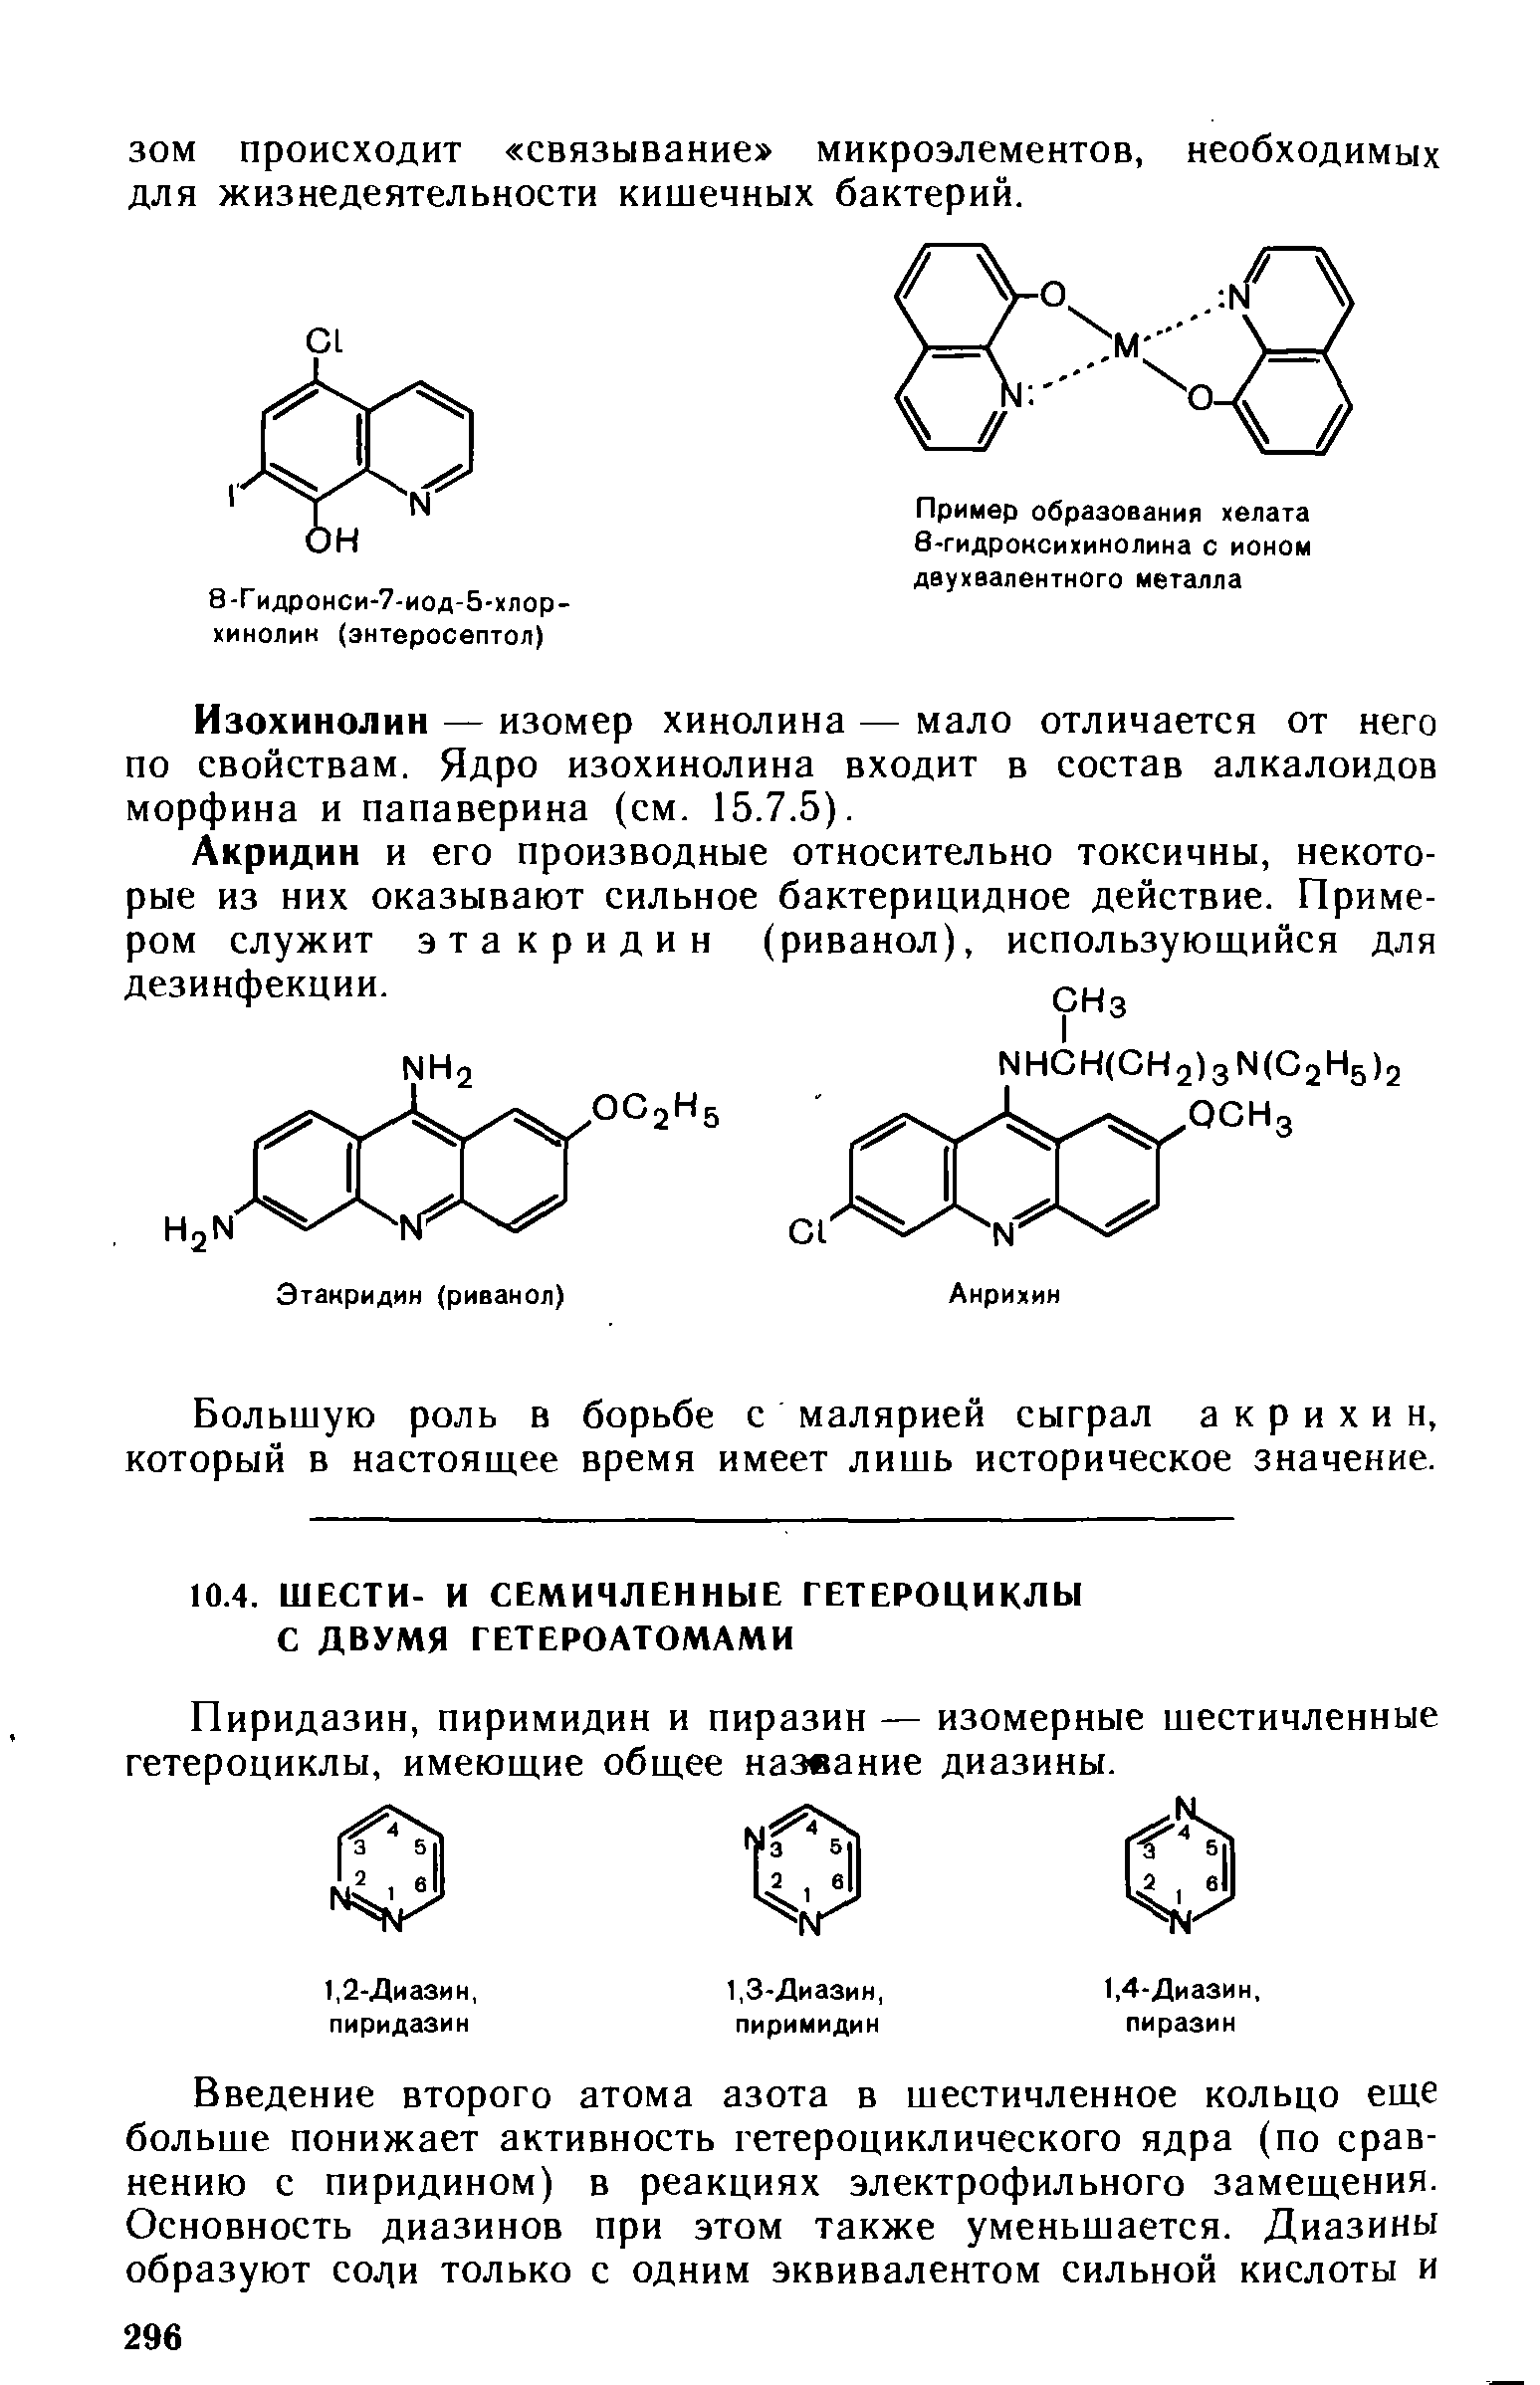 Пиридазин, пиримидин и пиразин — изомерные шестичленные гетероциклы, имеюшие обшее название диазины.